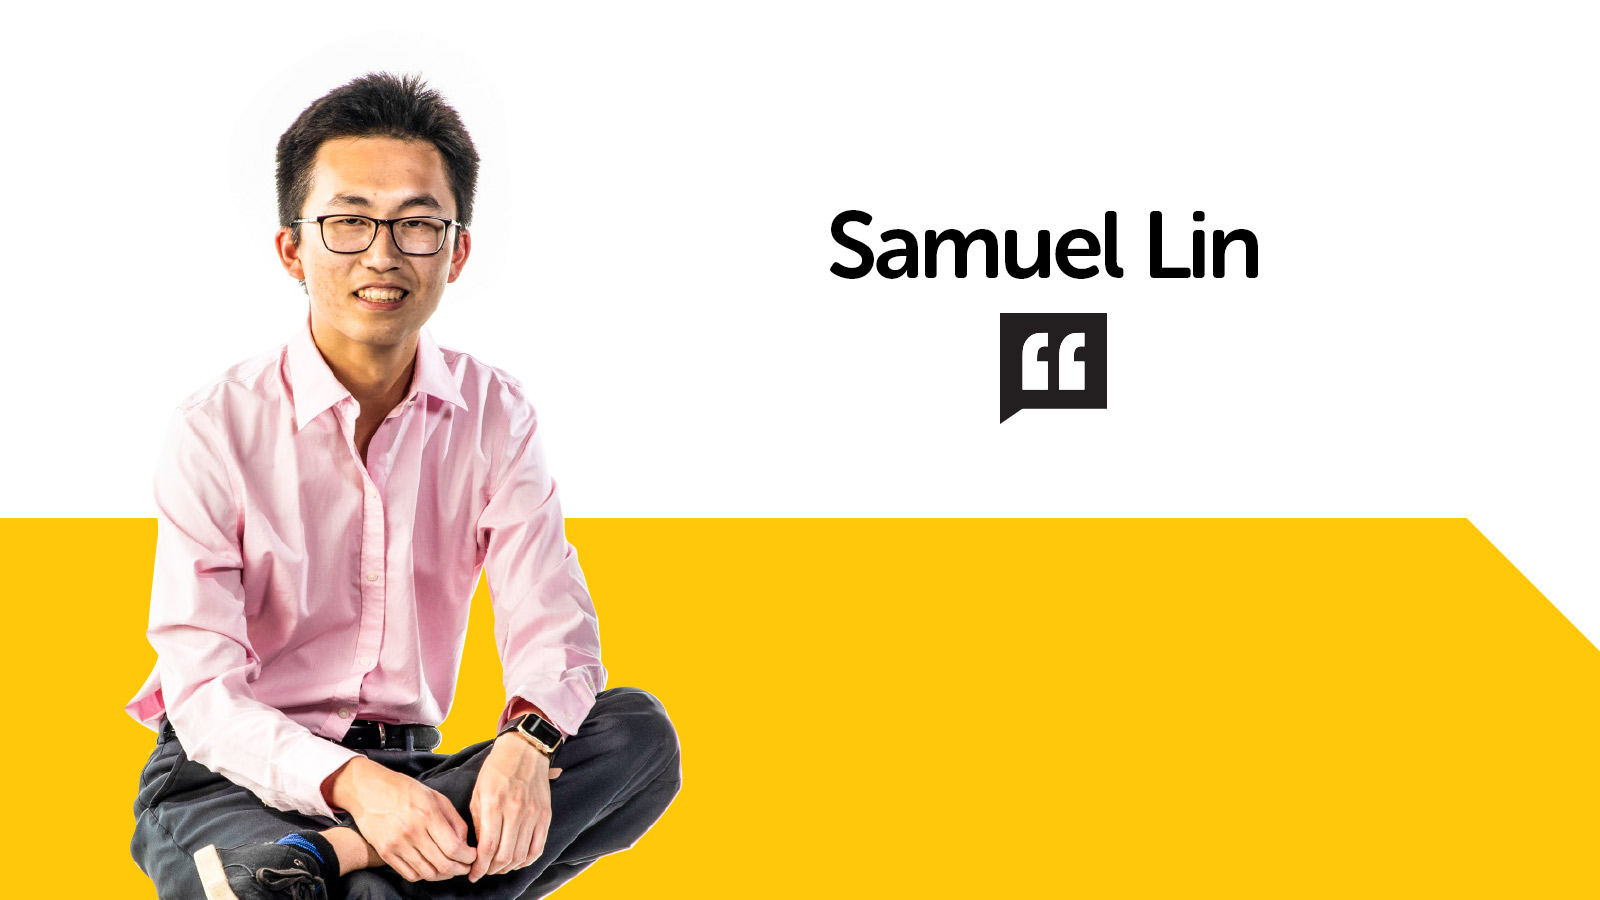 Samuel Lin